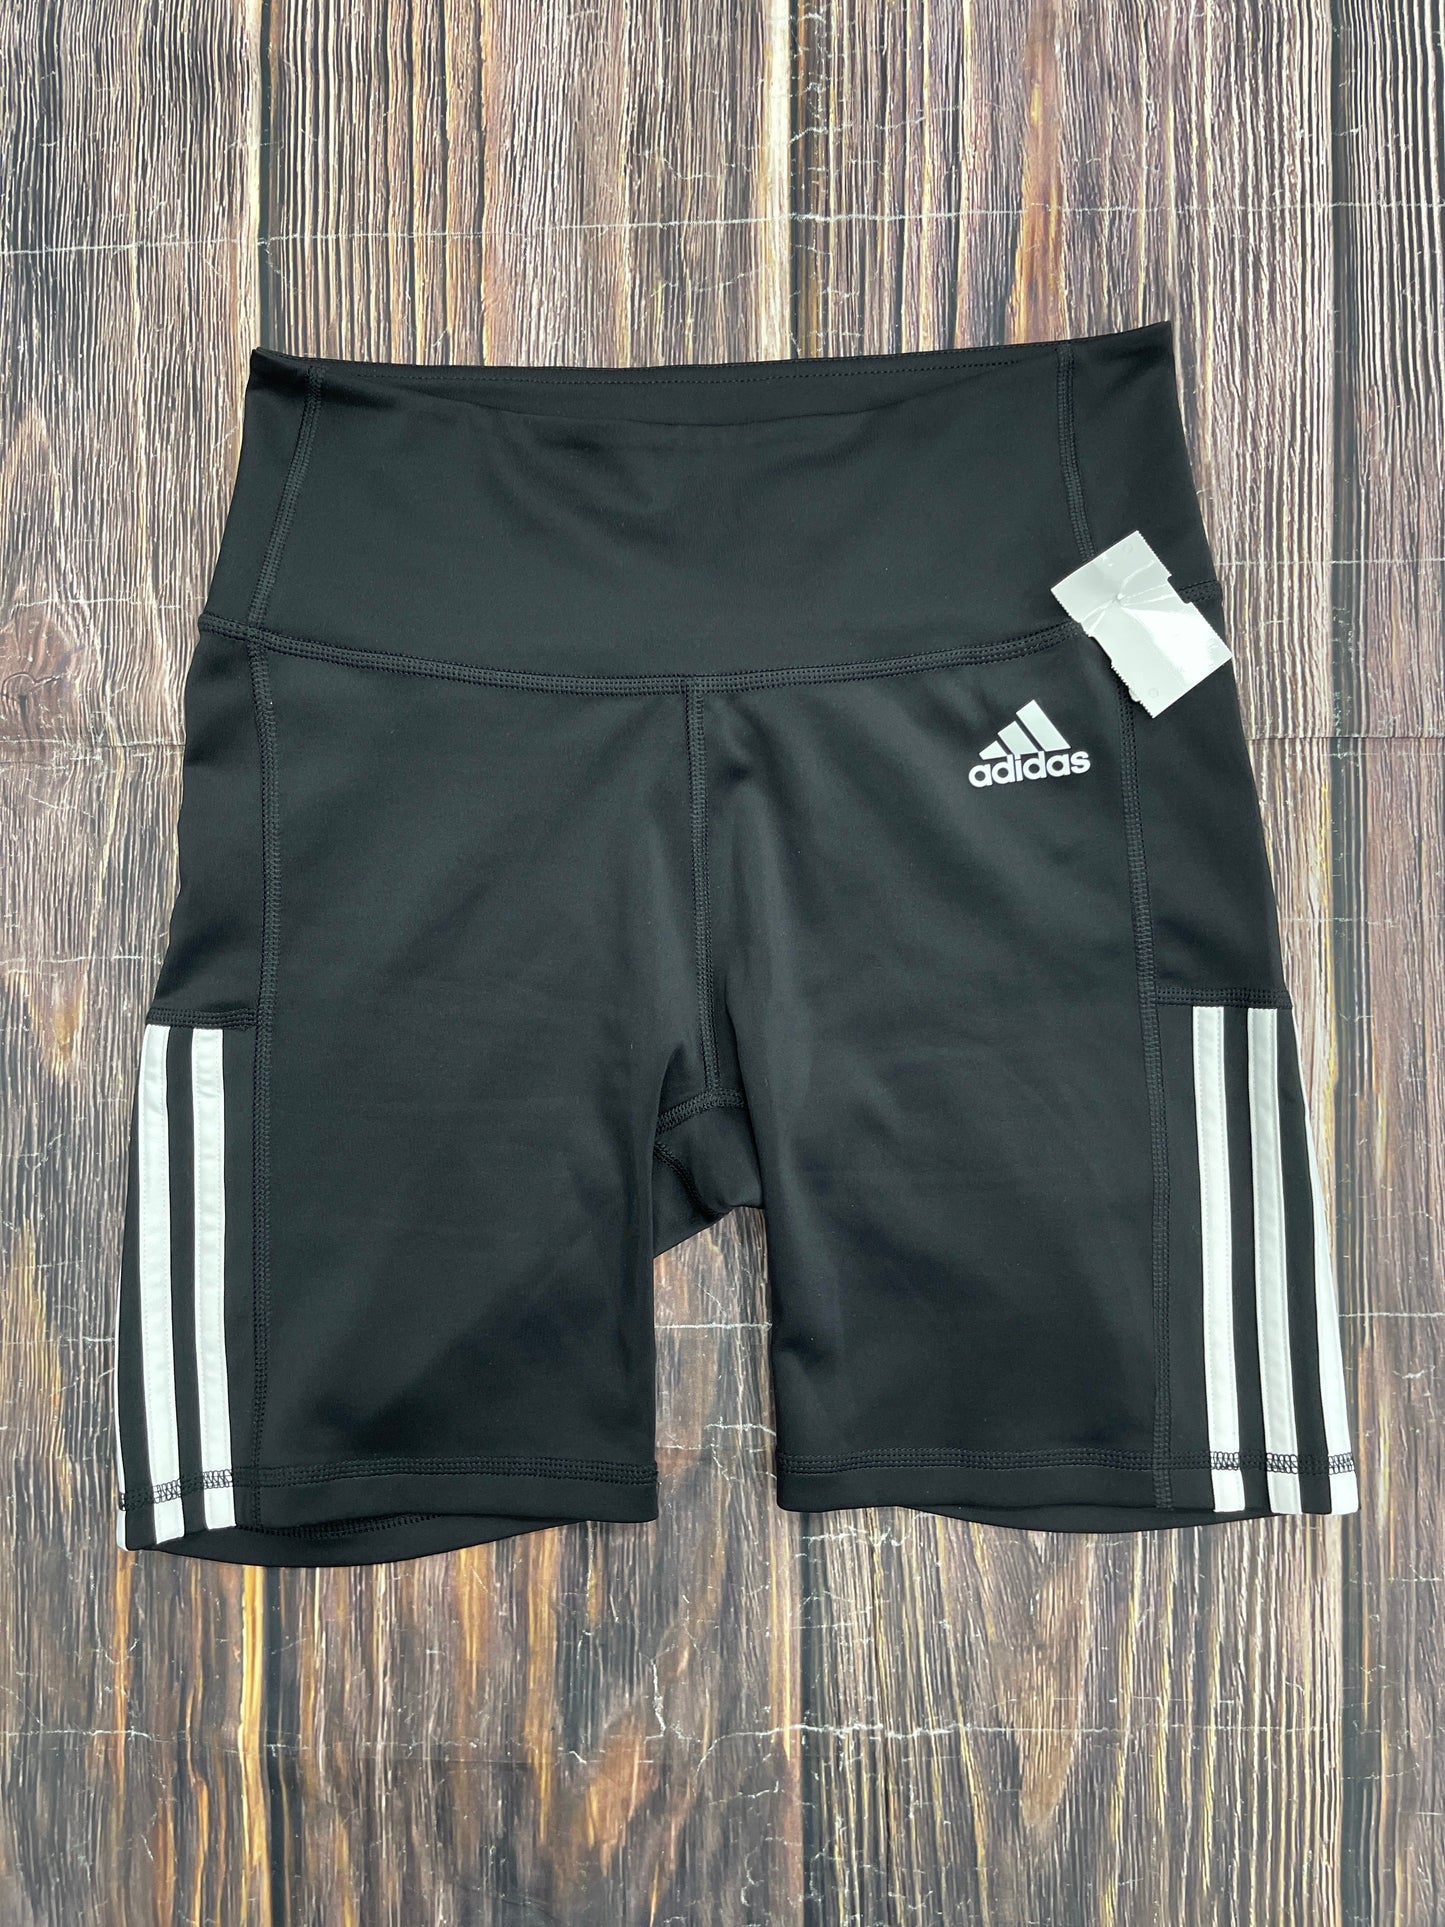 Black Athletic Shorts Adidas, Size M